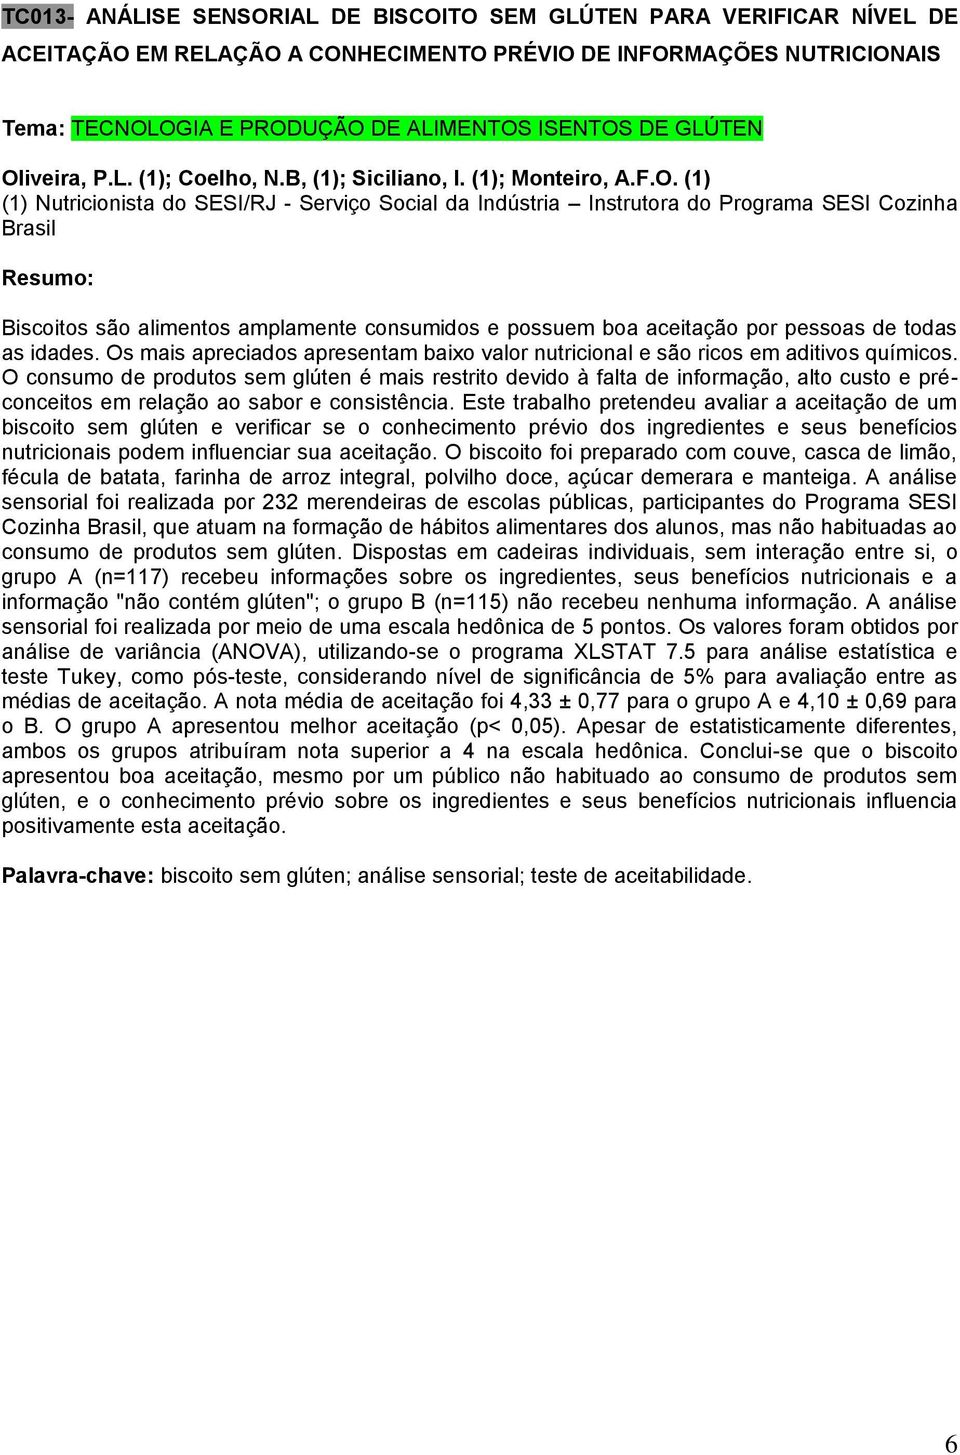 iveira, P.L. (1); Coelho, N.B, (1); Siciliano, I. (1); Monteiro, A.F.O.